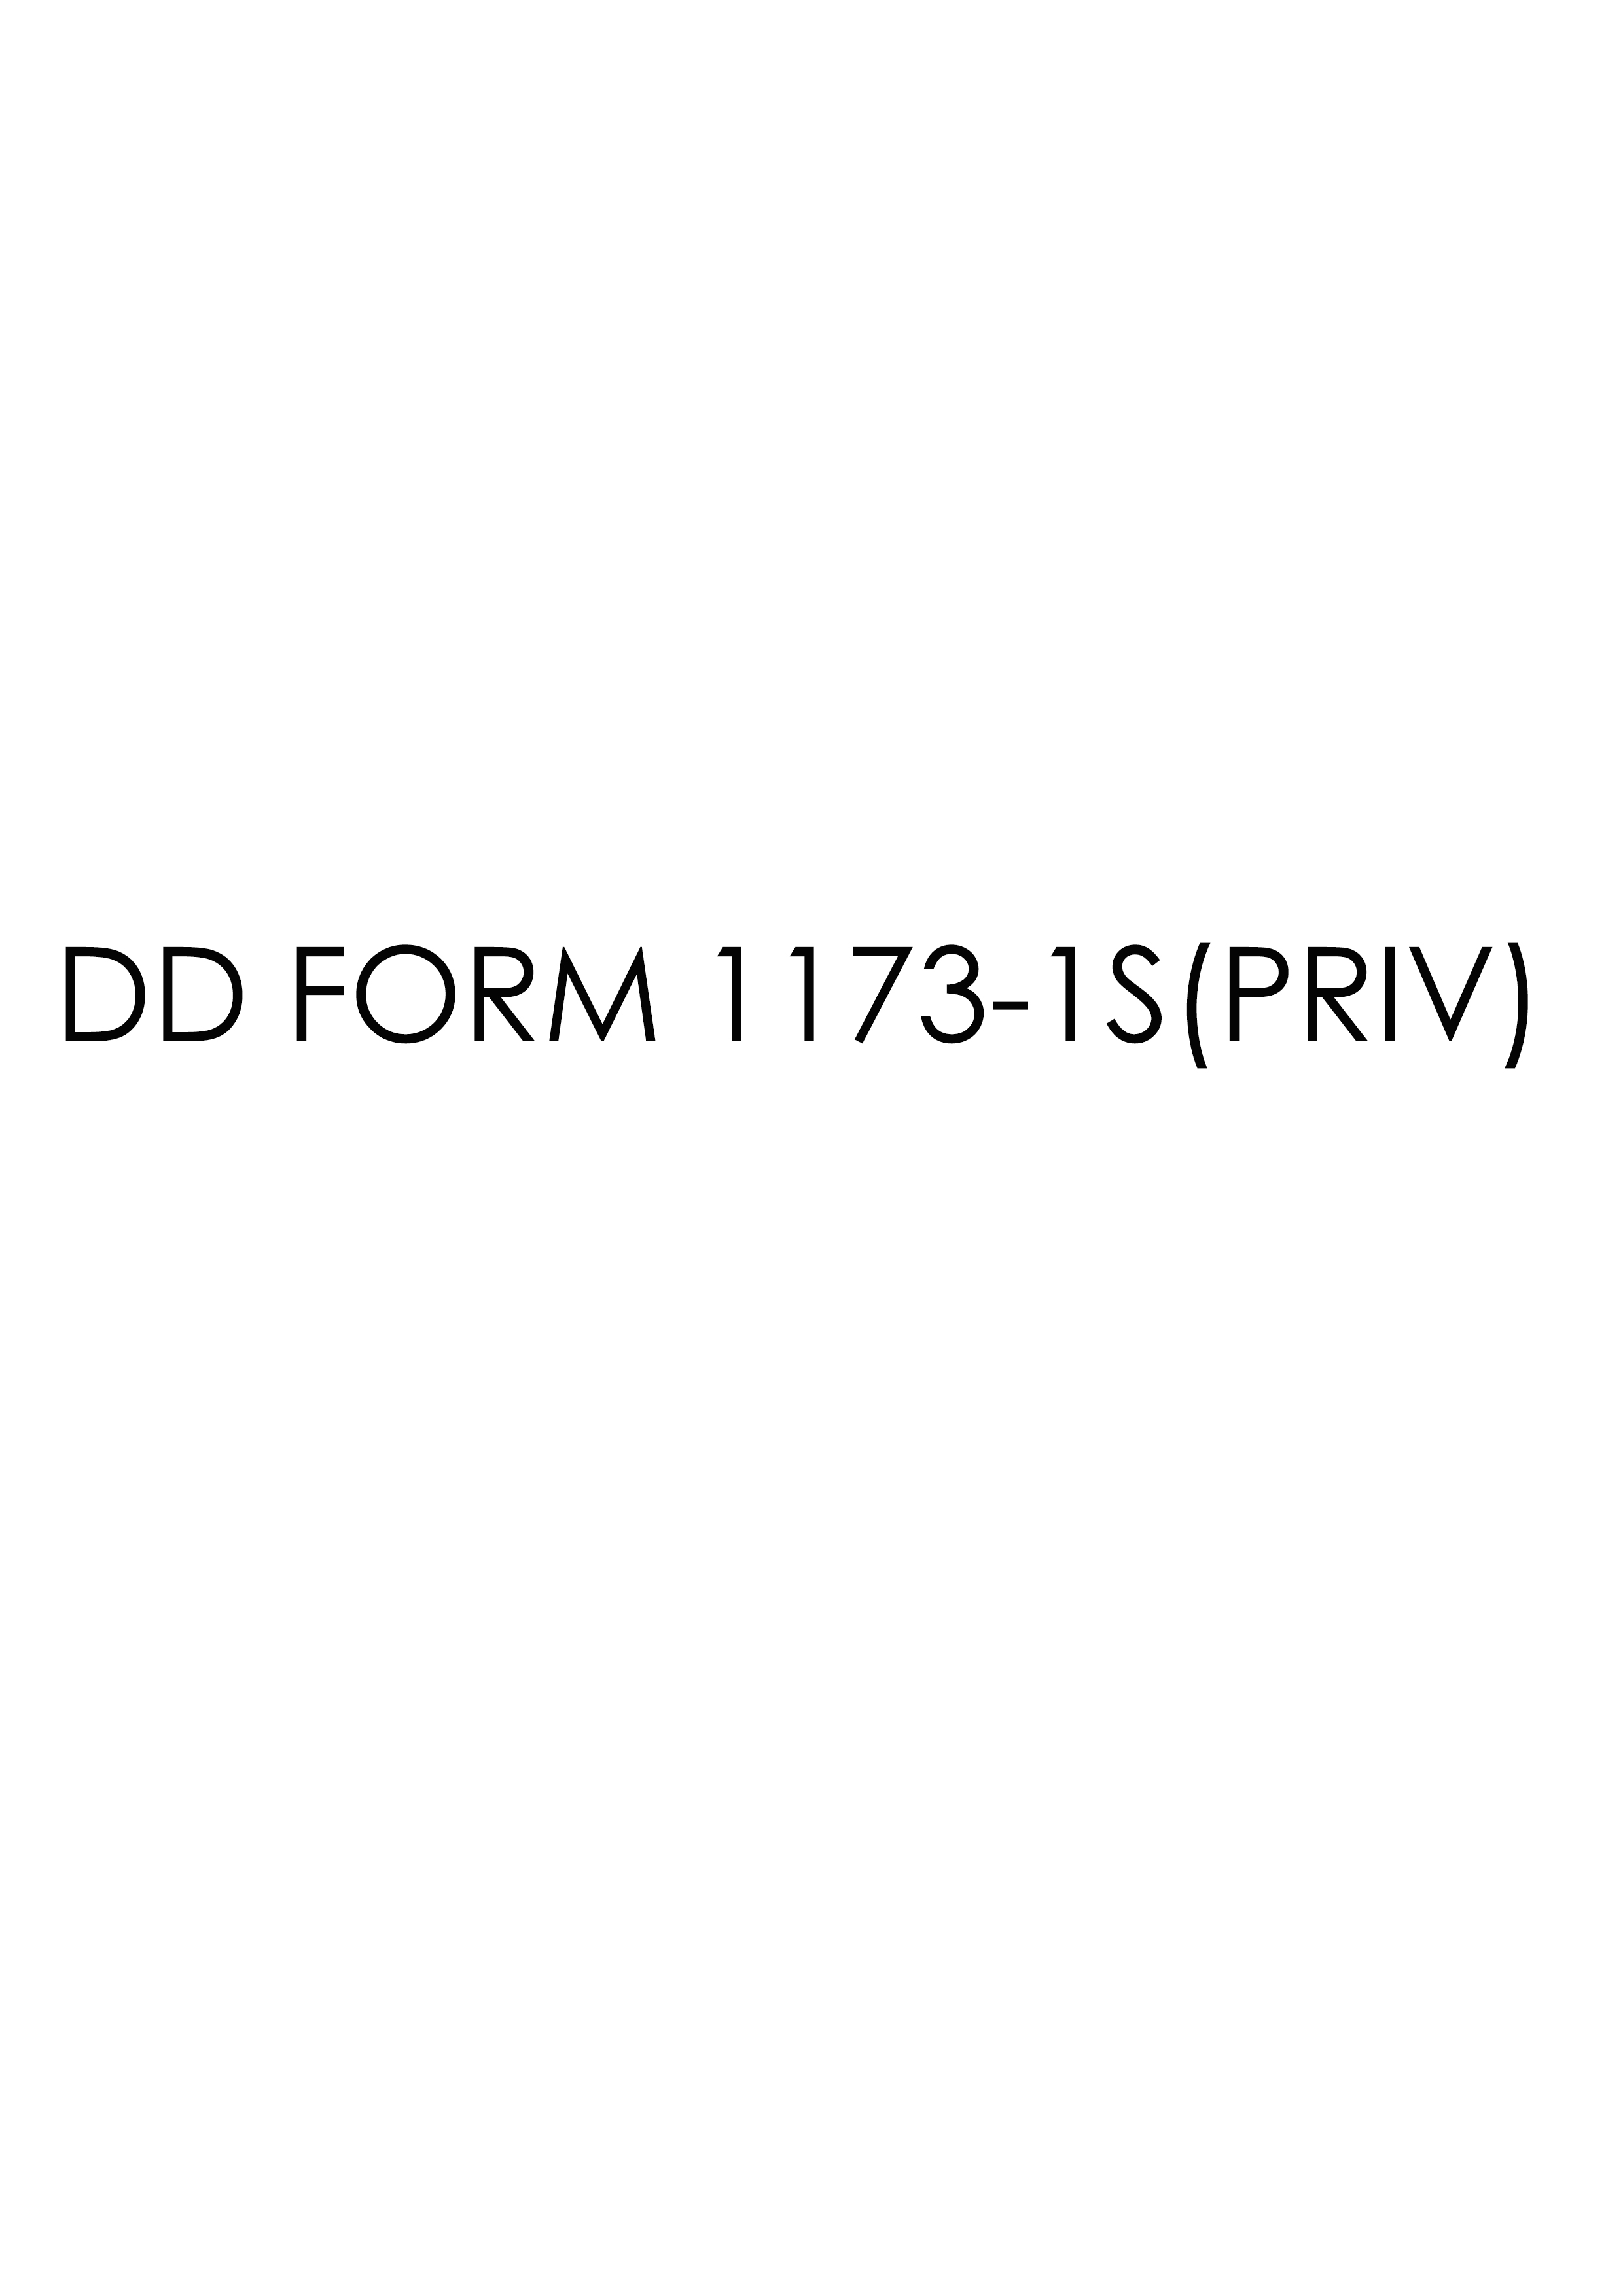 Download dd Form 1173-1S(PRIV)